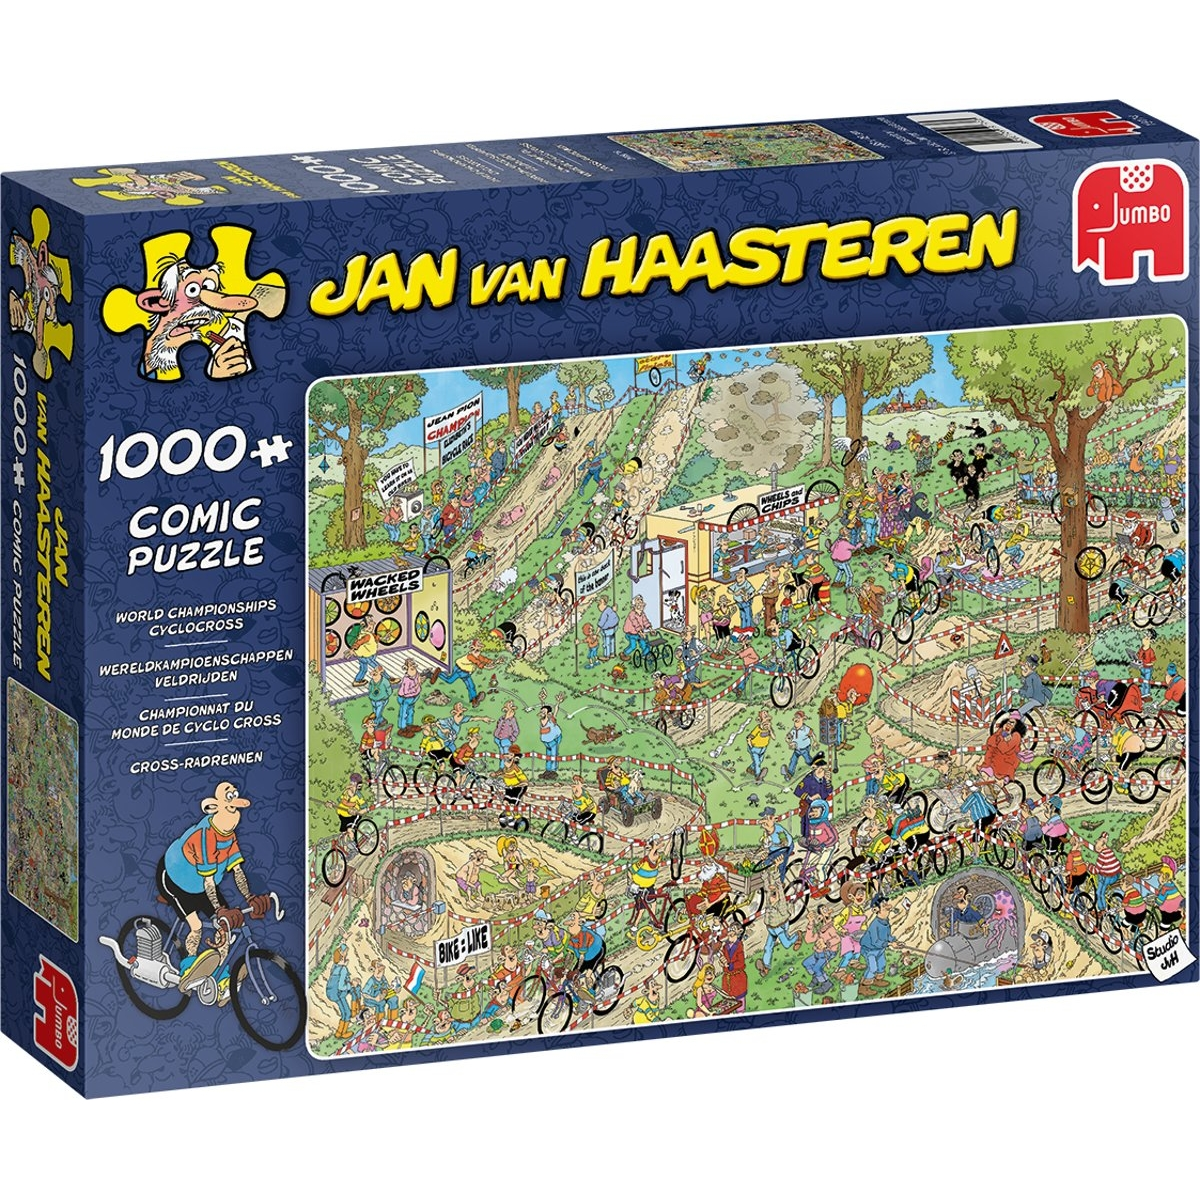 JUMBO Jan van Haasteren Cross-Radrennen Puzzle Teile 1000